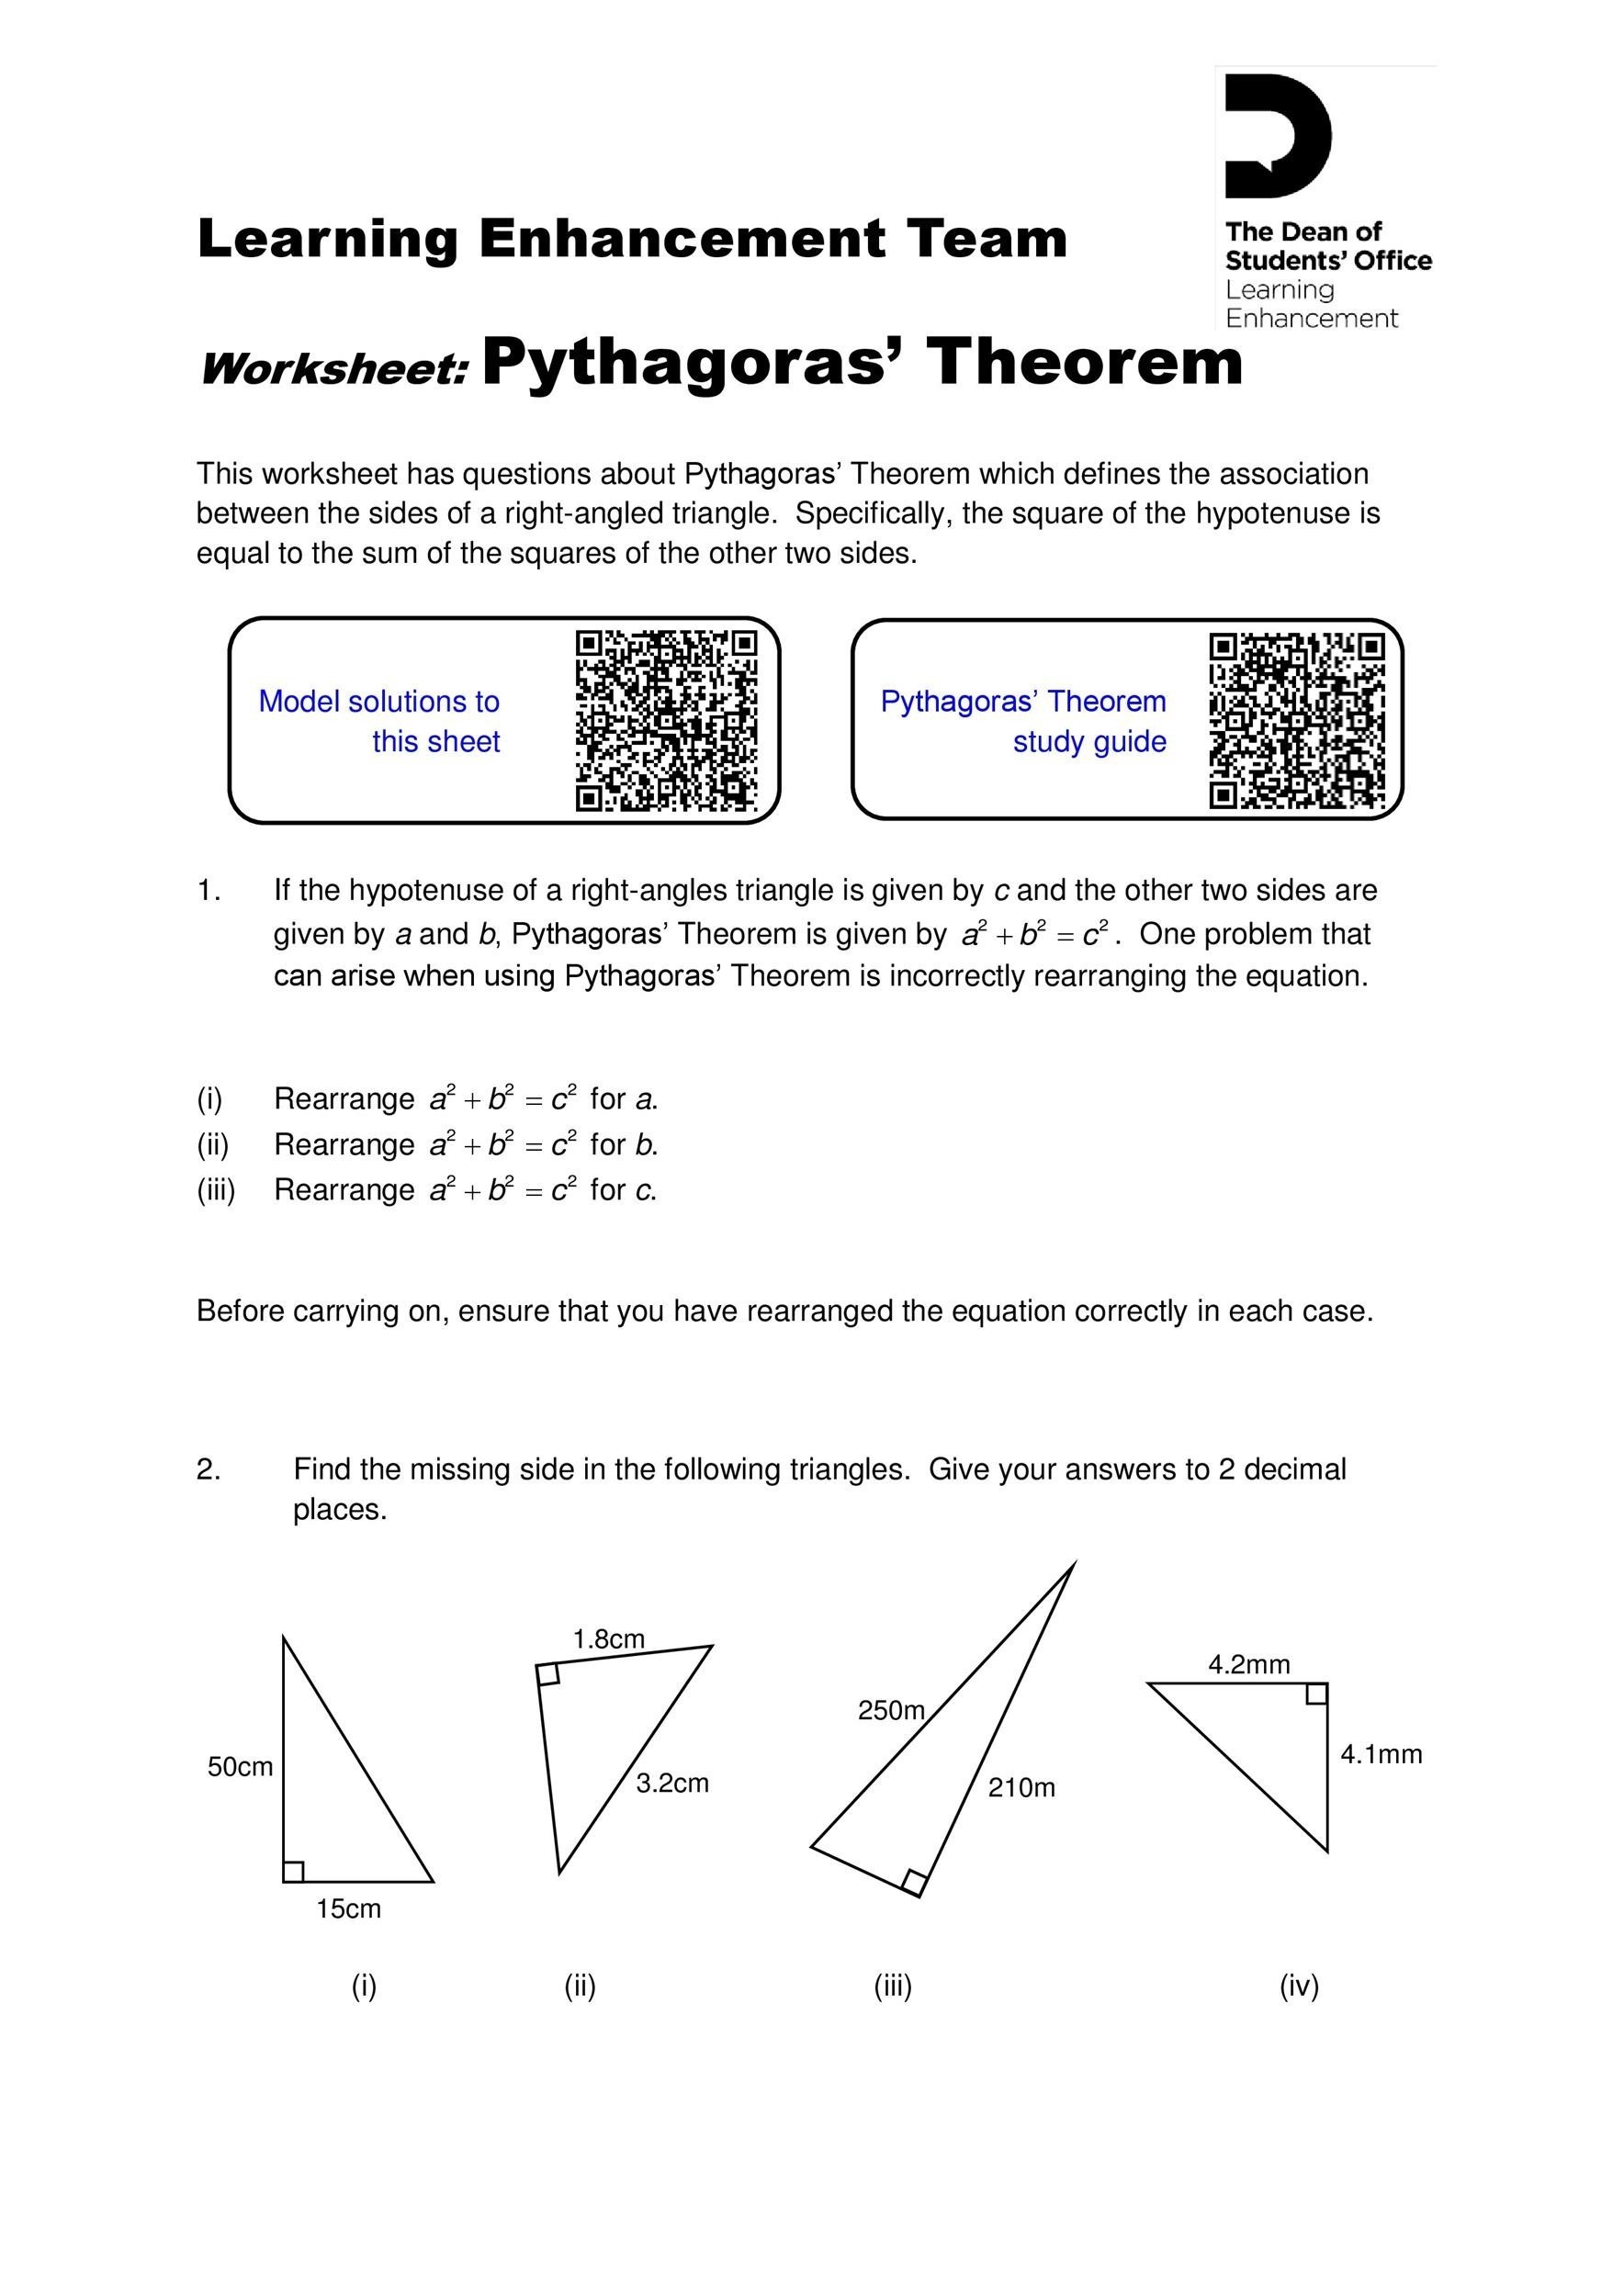 pythagoras-theorem-questions